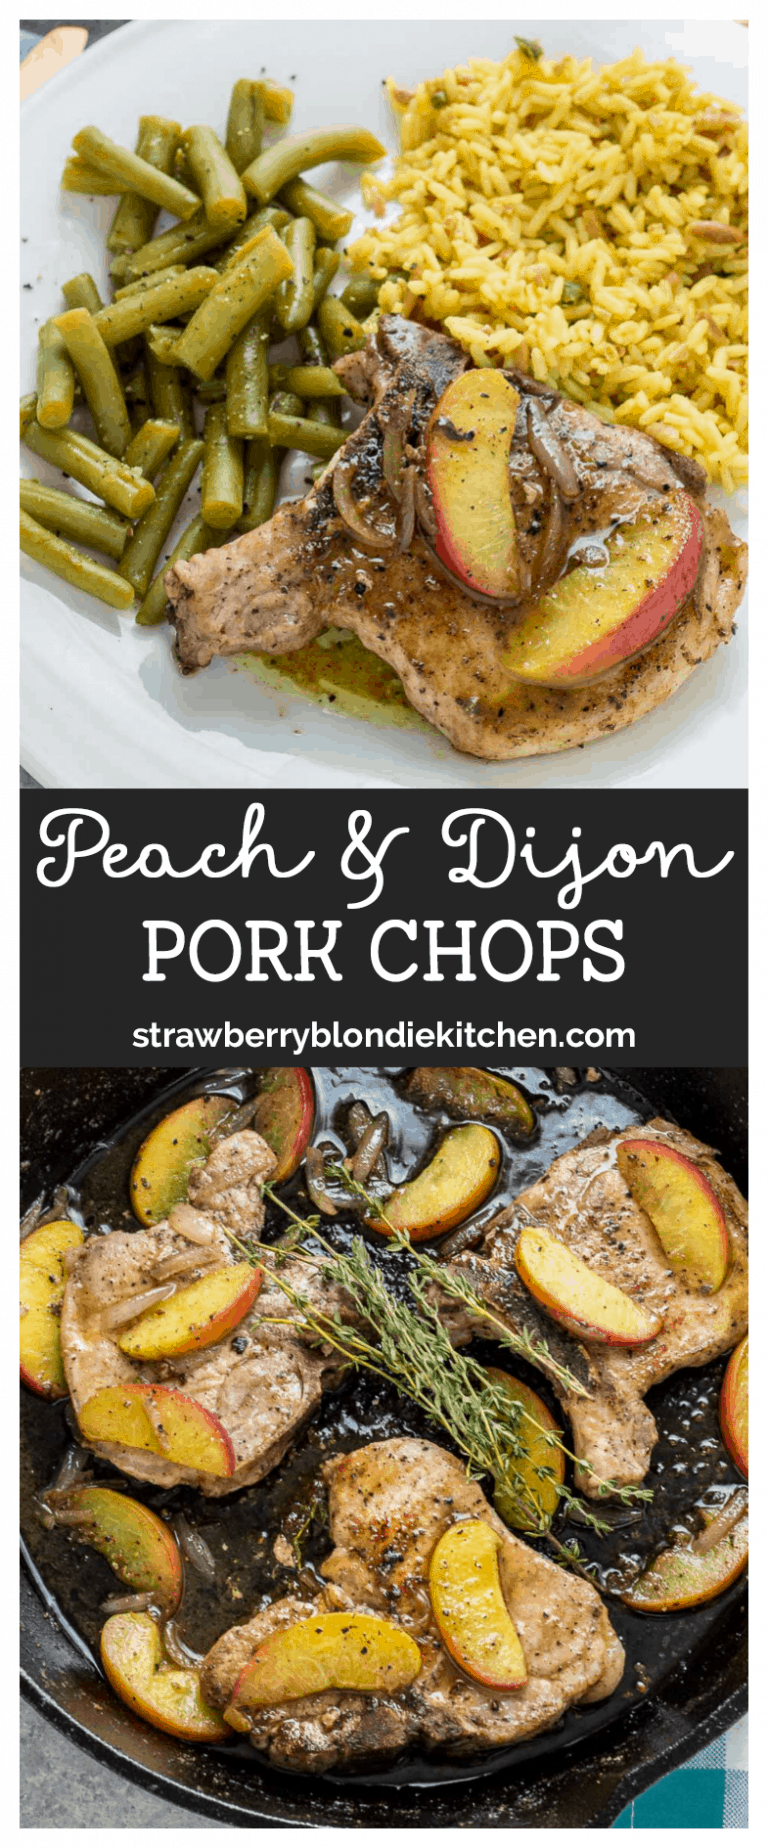 Peach and Dijon Pork Chops - Strawberry Blondie Kitchen